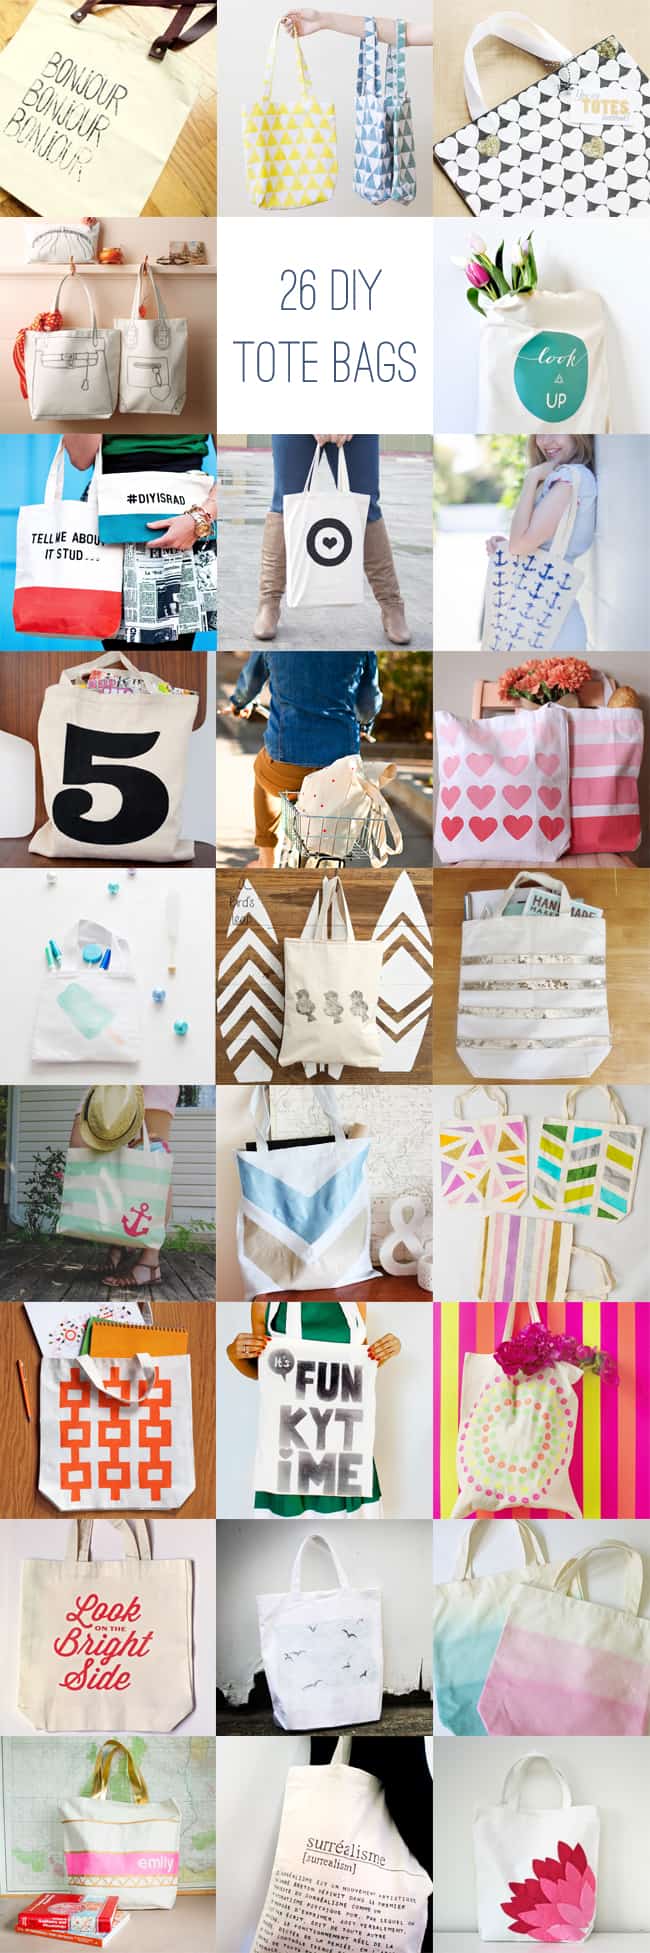 26 DIY Tote Bag Ideas